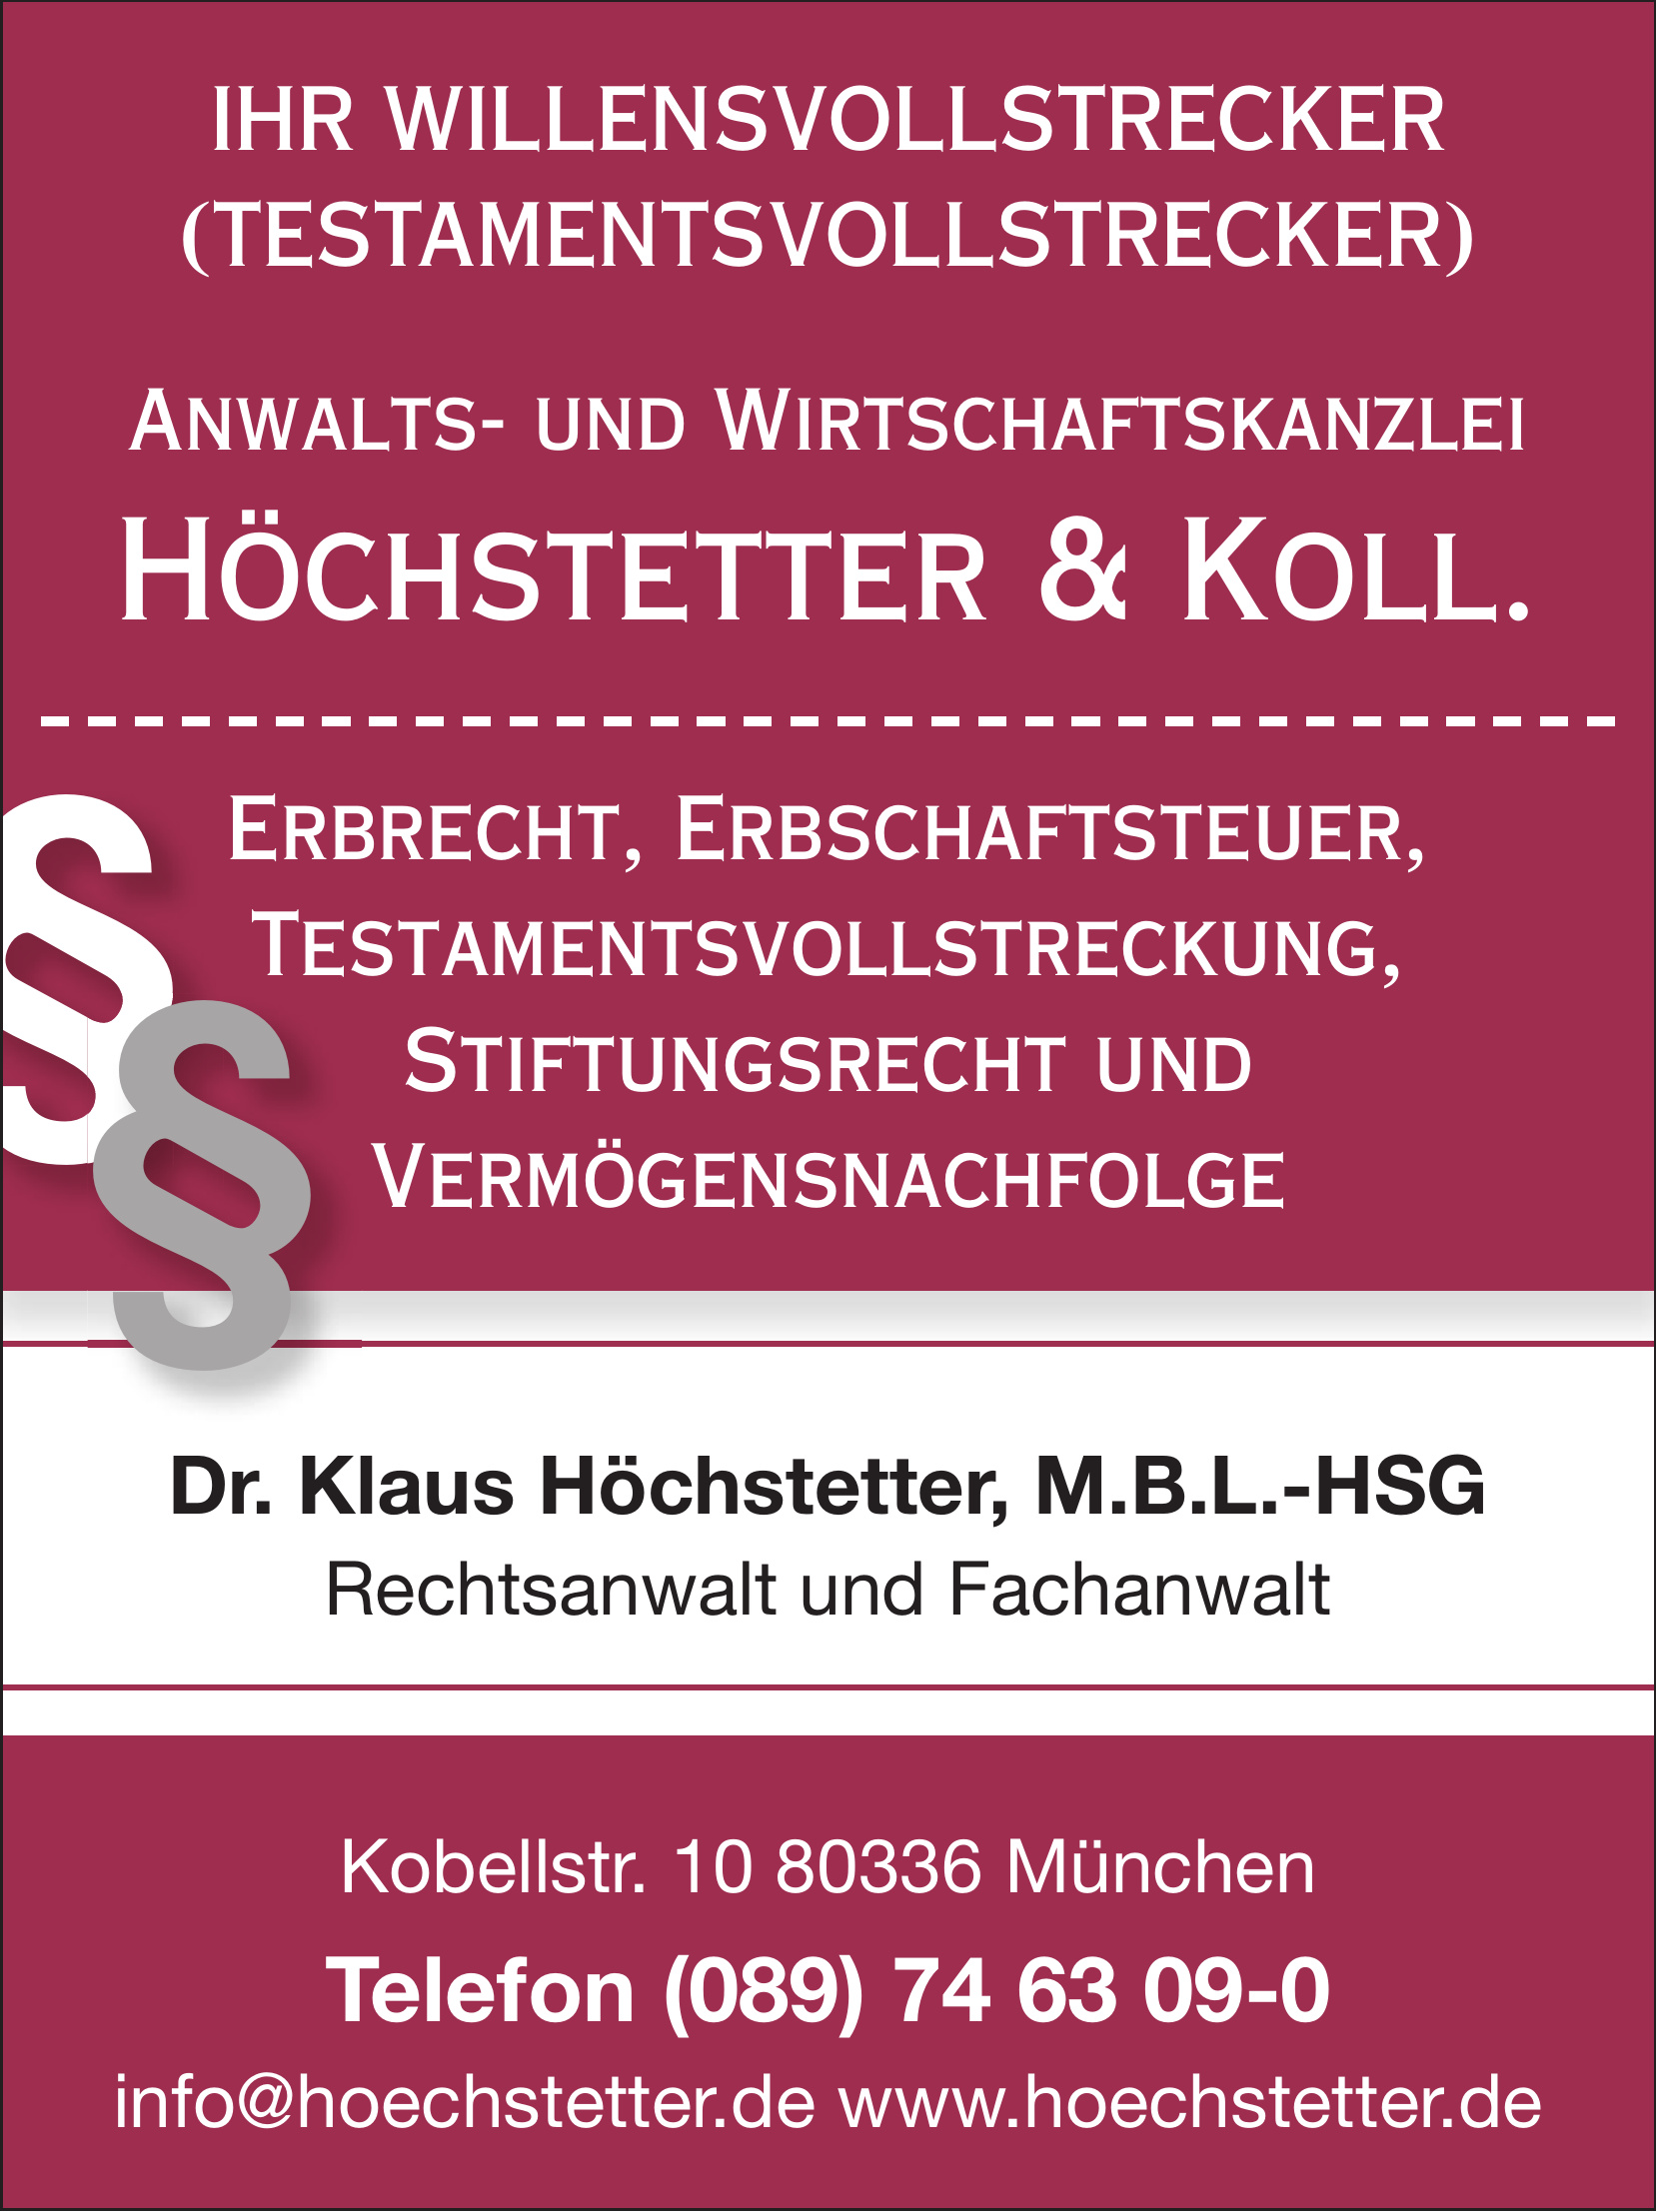 Dr. Klaus Höchstetter, M.B.L.-HSG Rechtsanwalt und Fachanwalt